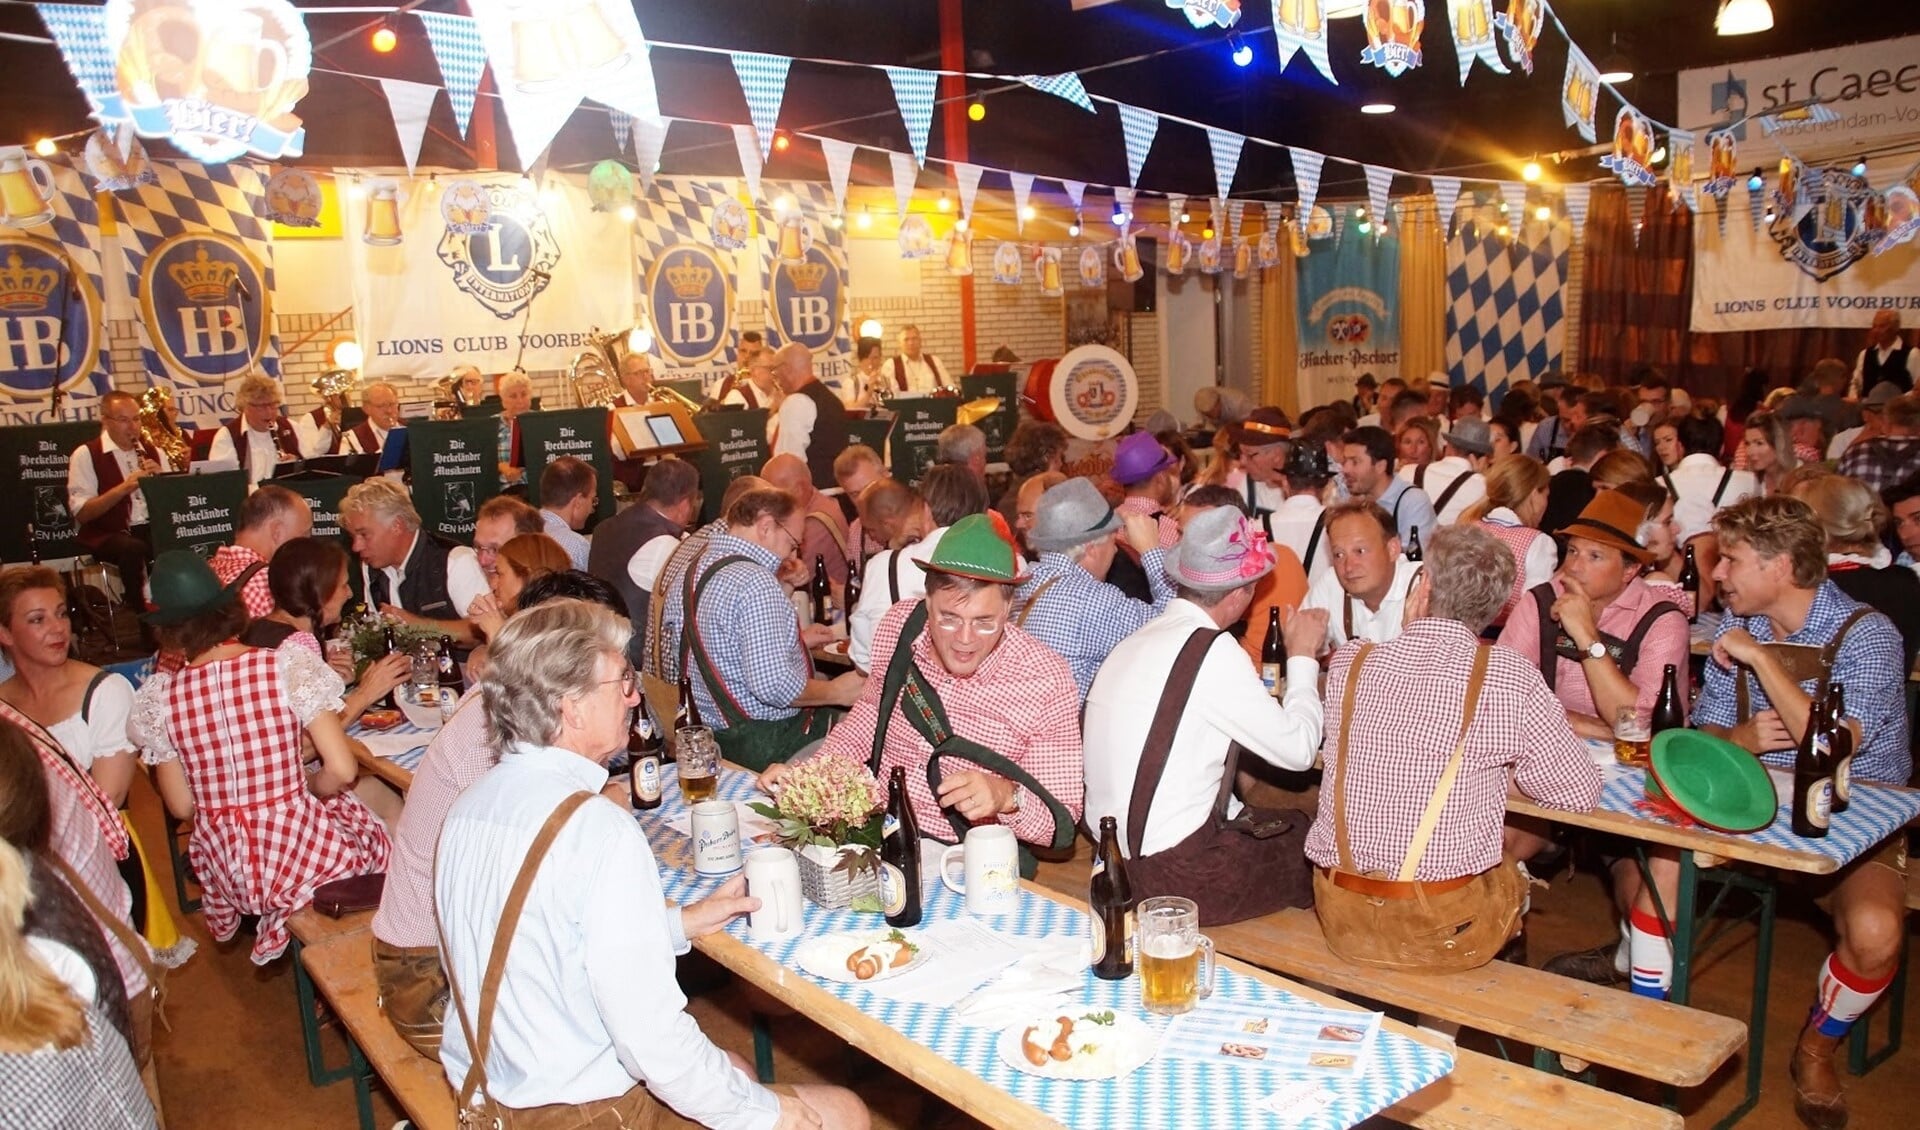 Impressie van het feest met de traditioneel verklede gasten aan lange tafels met bierpullen en Bratwurst (foto: pr).